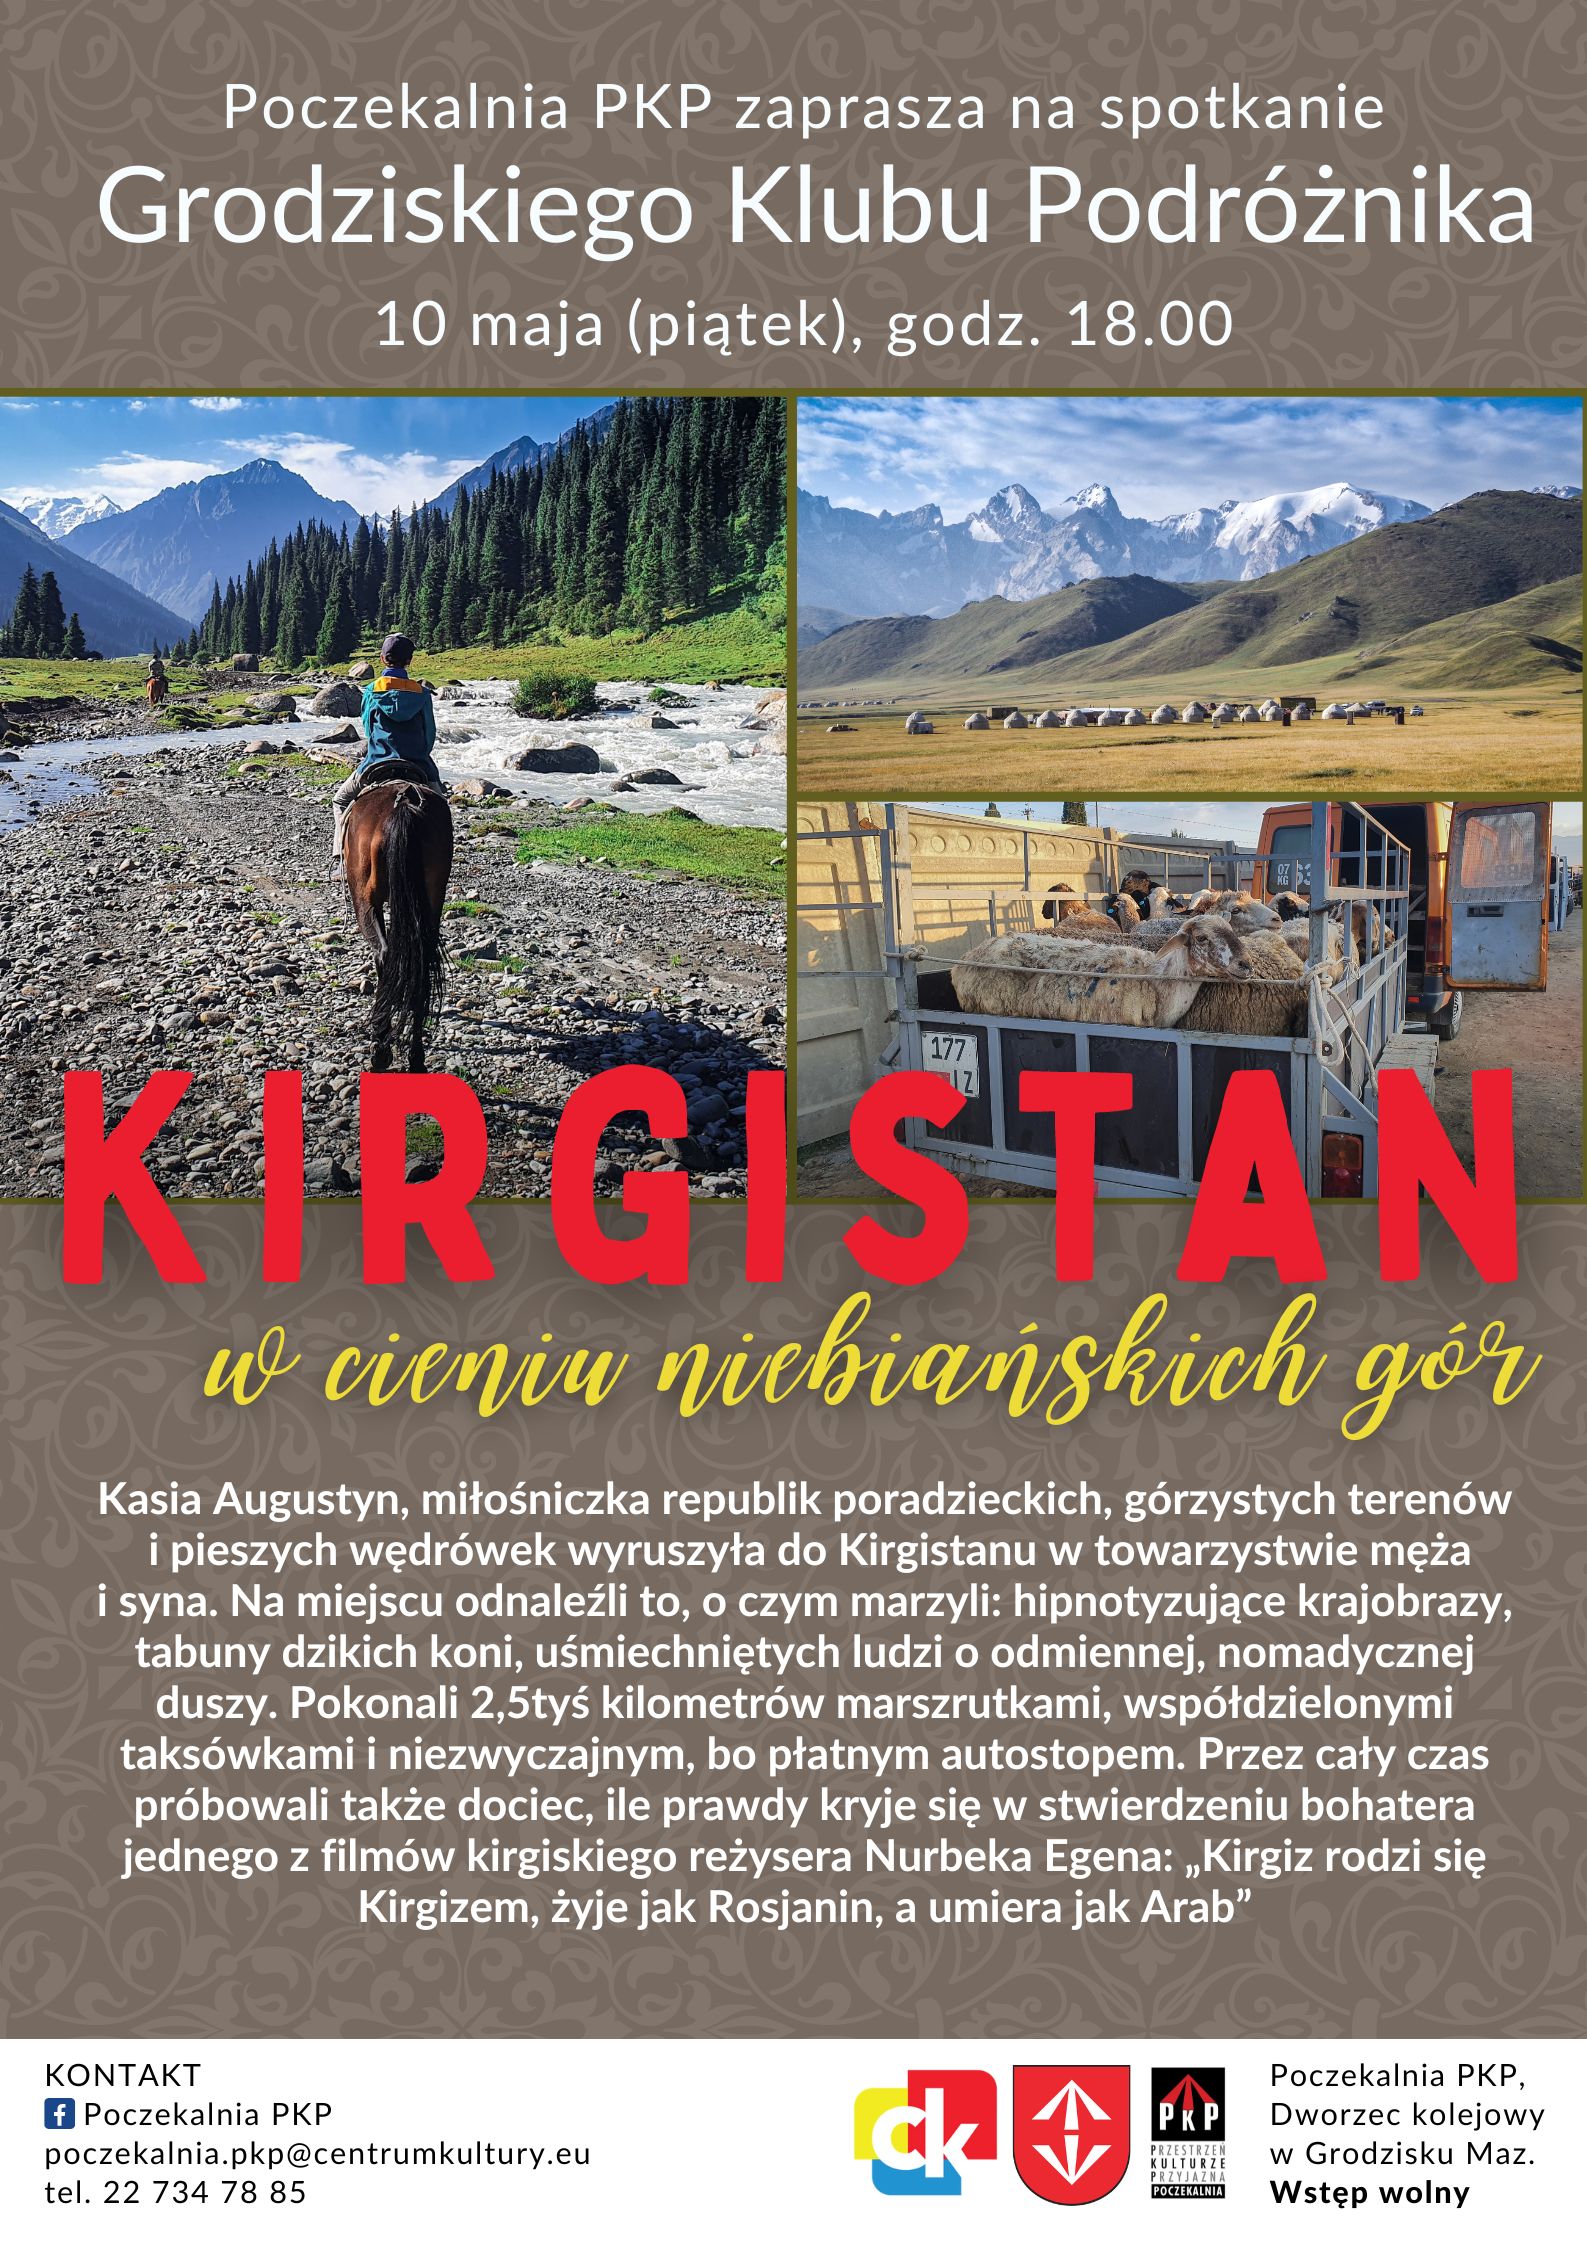 Kirgistan – w cieniu niebiańskich gór